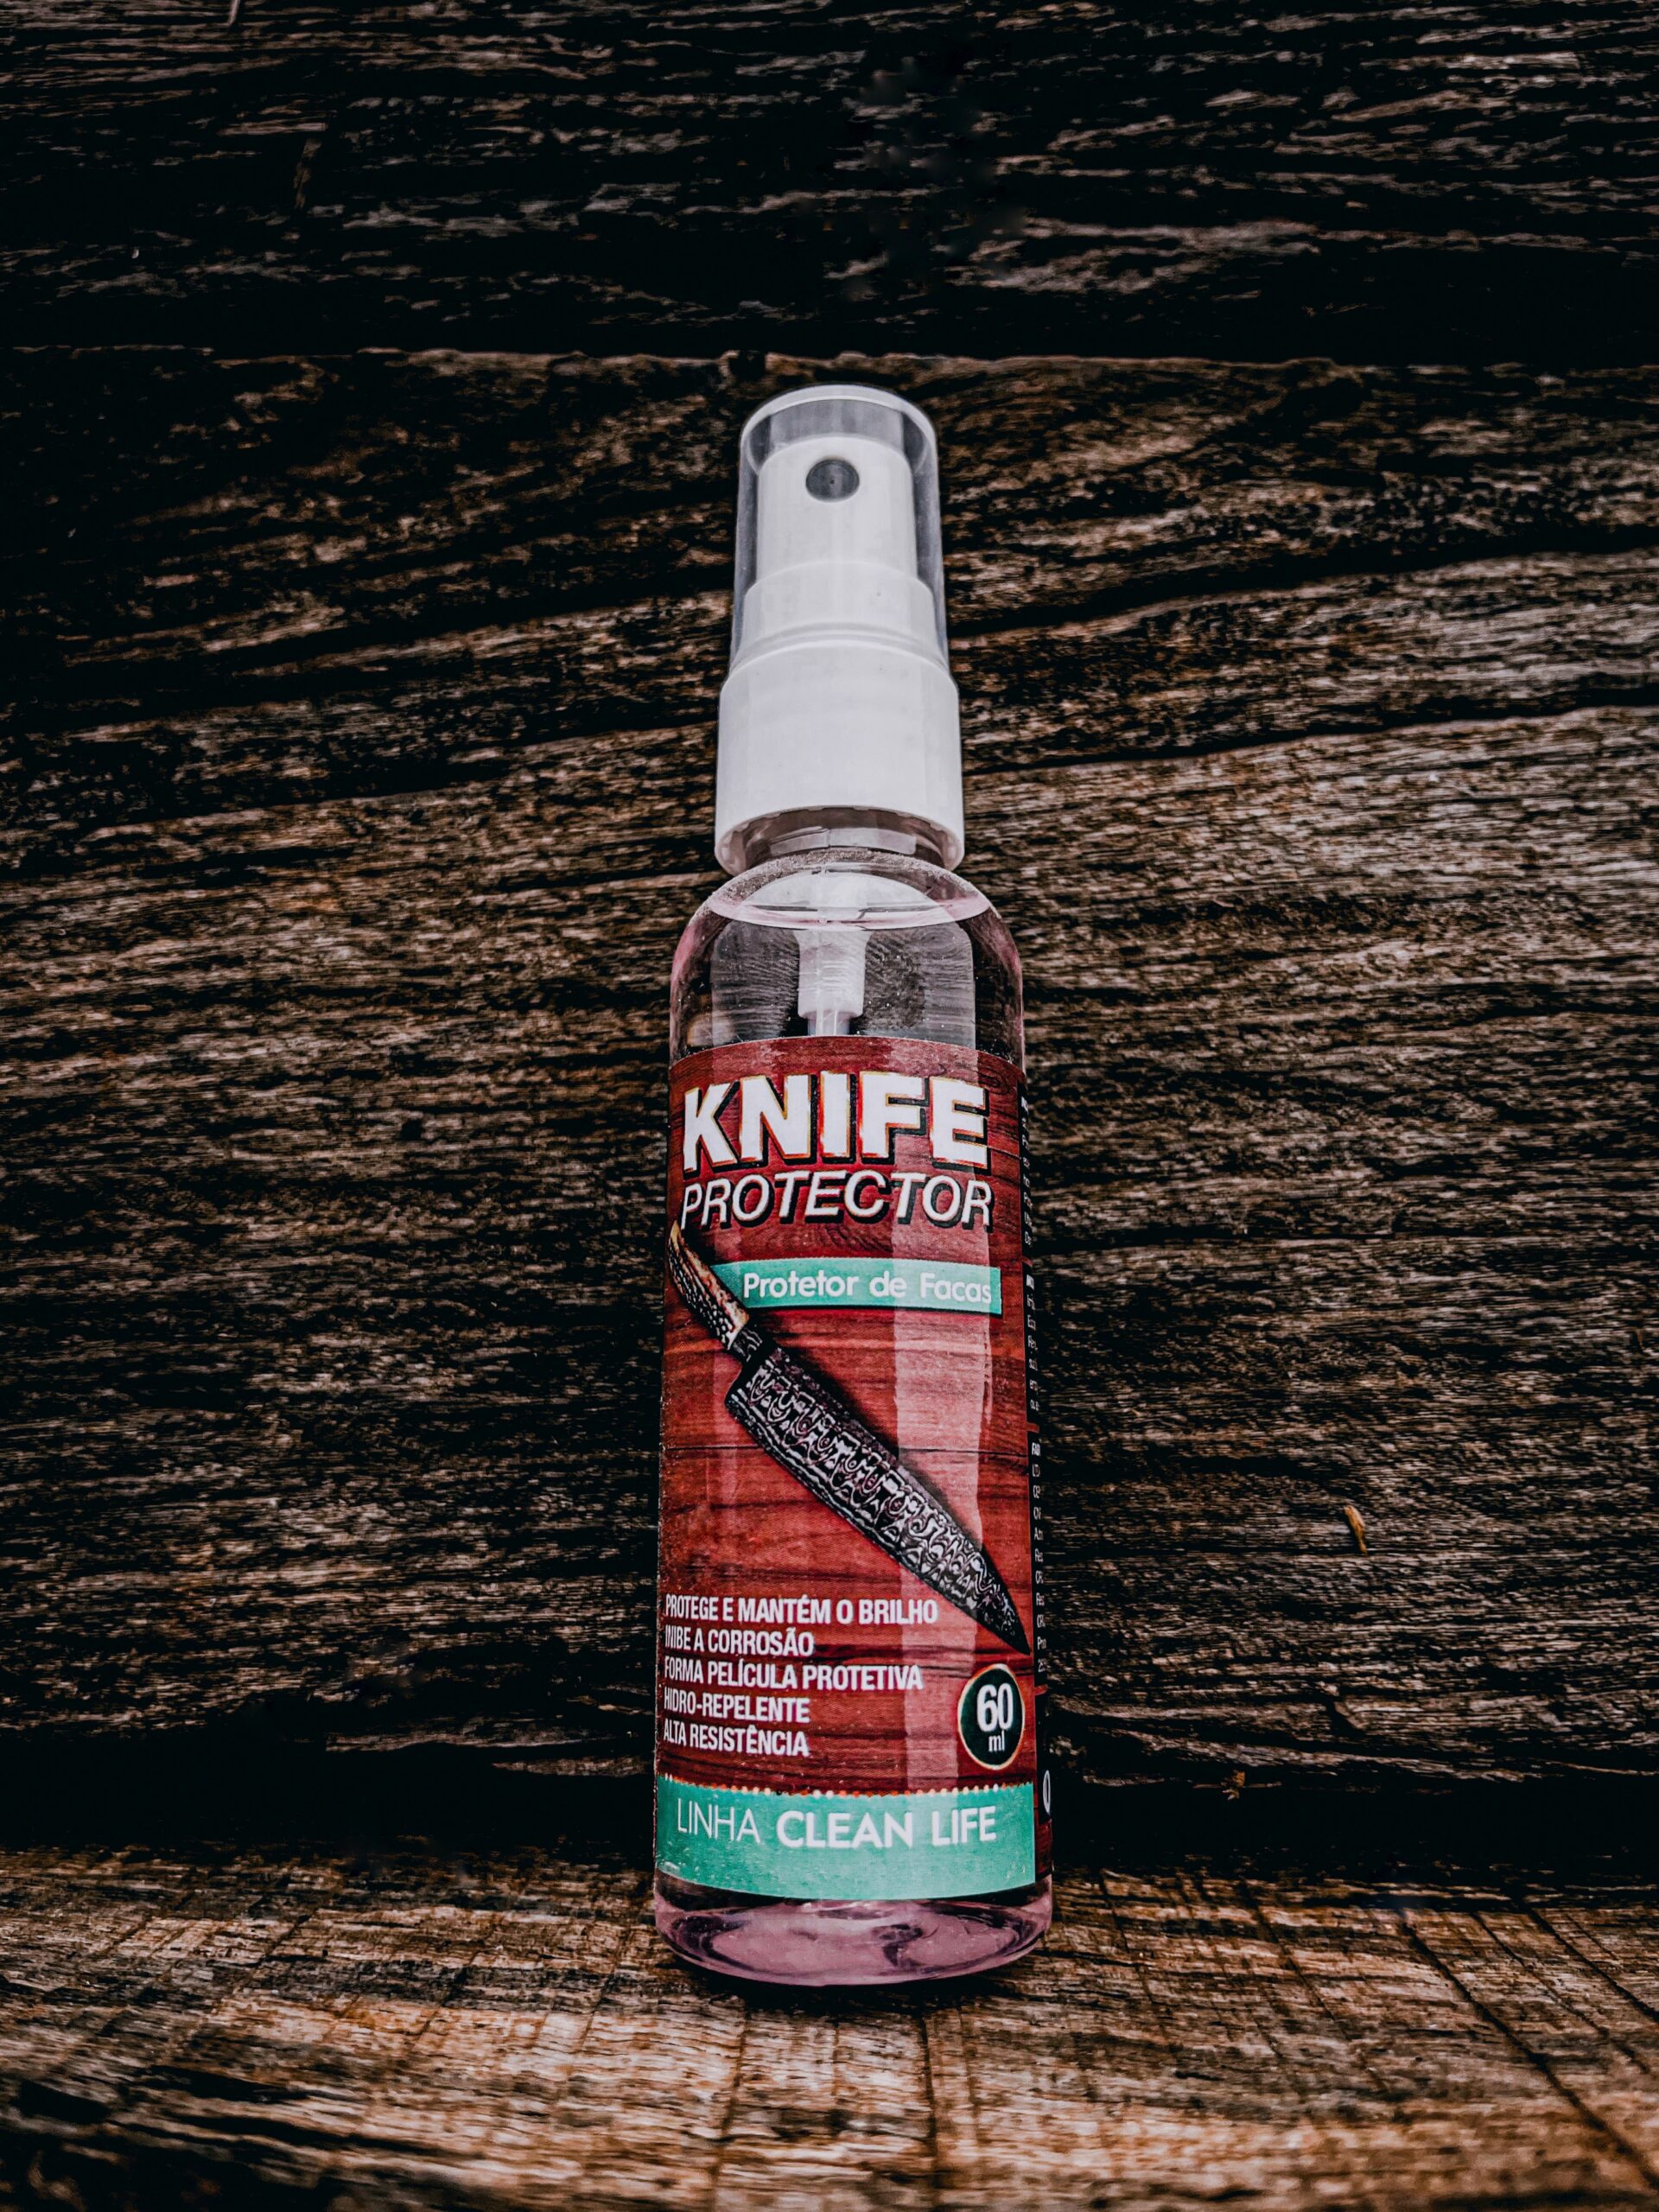 Knife Protector – Protetor de Facas